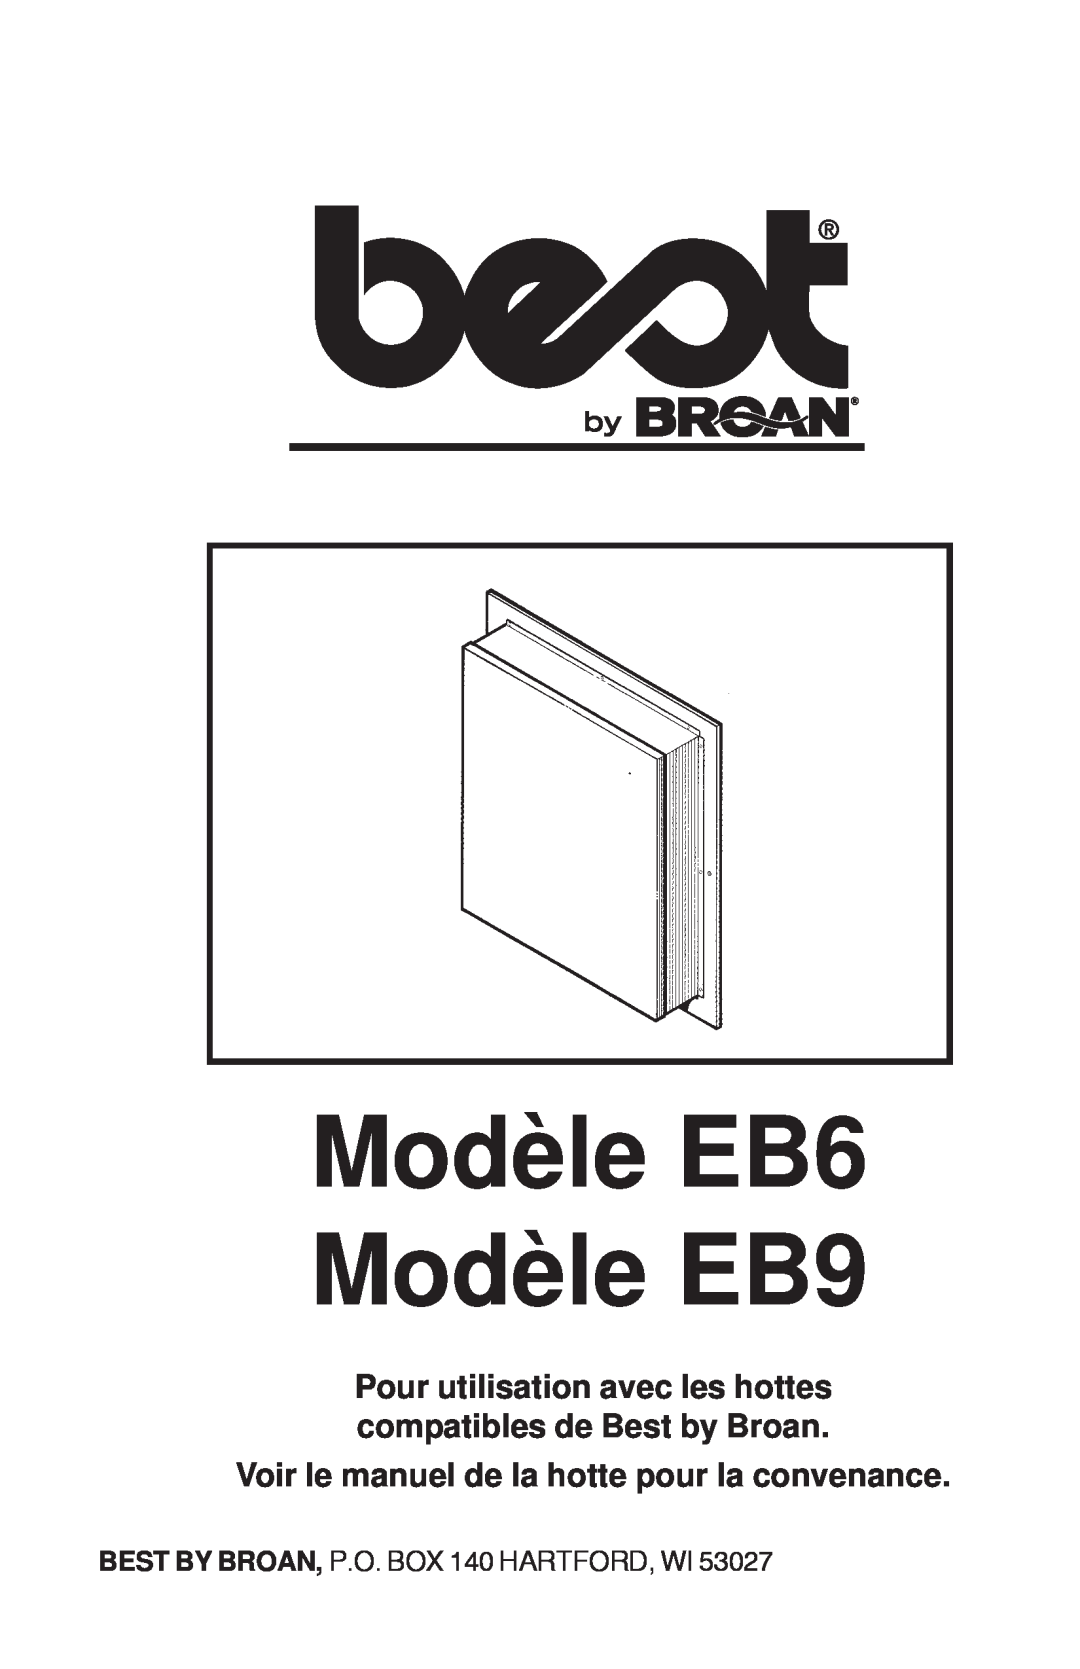 Best Modèle EB6 Modèle EB9, Voir le manuel de la hotte pour la convenance, BEST BY BROAN, P.O. BOX 140 HARTFORD, WI 